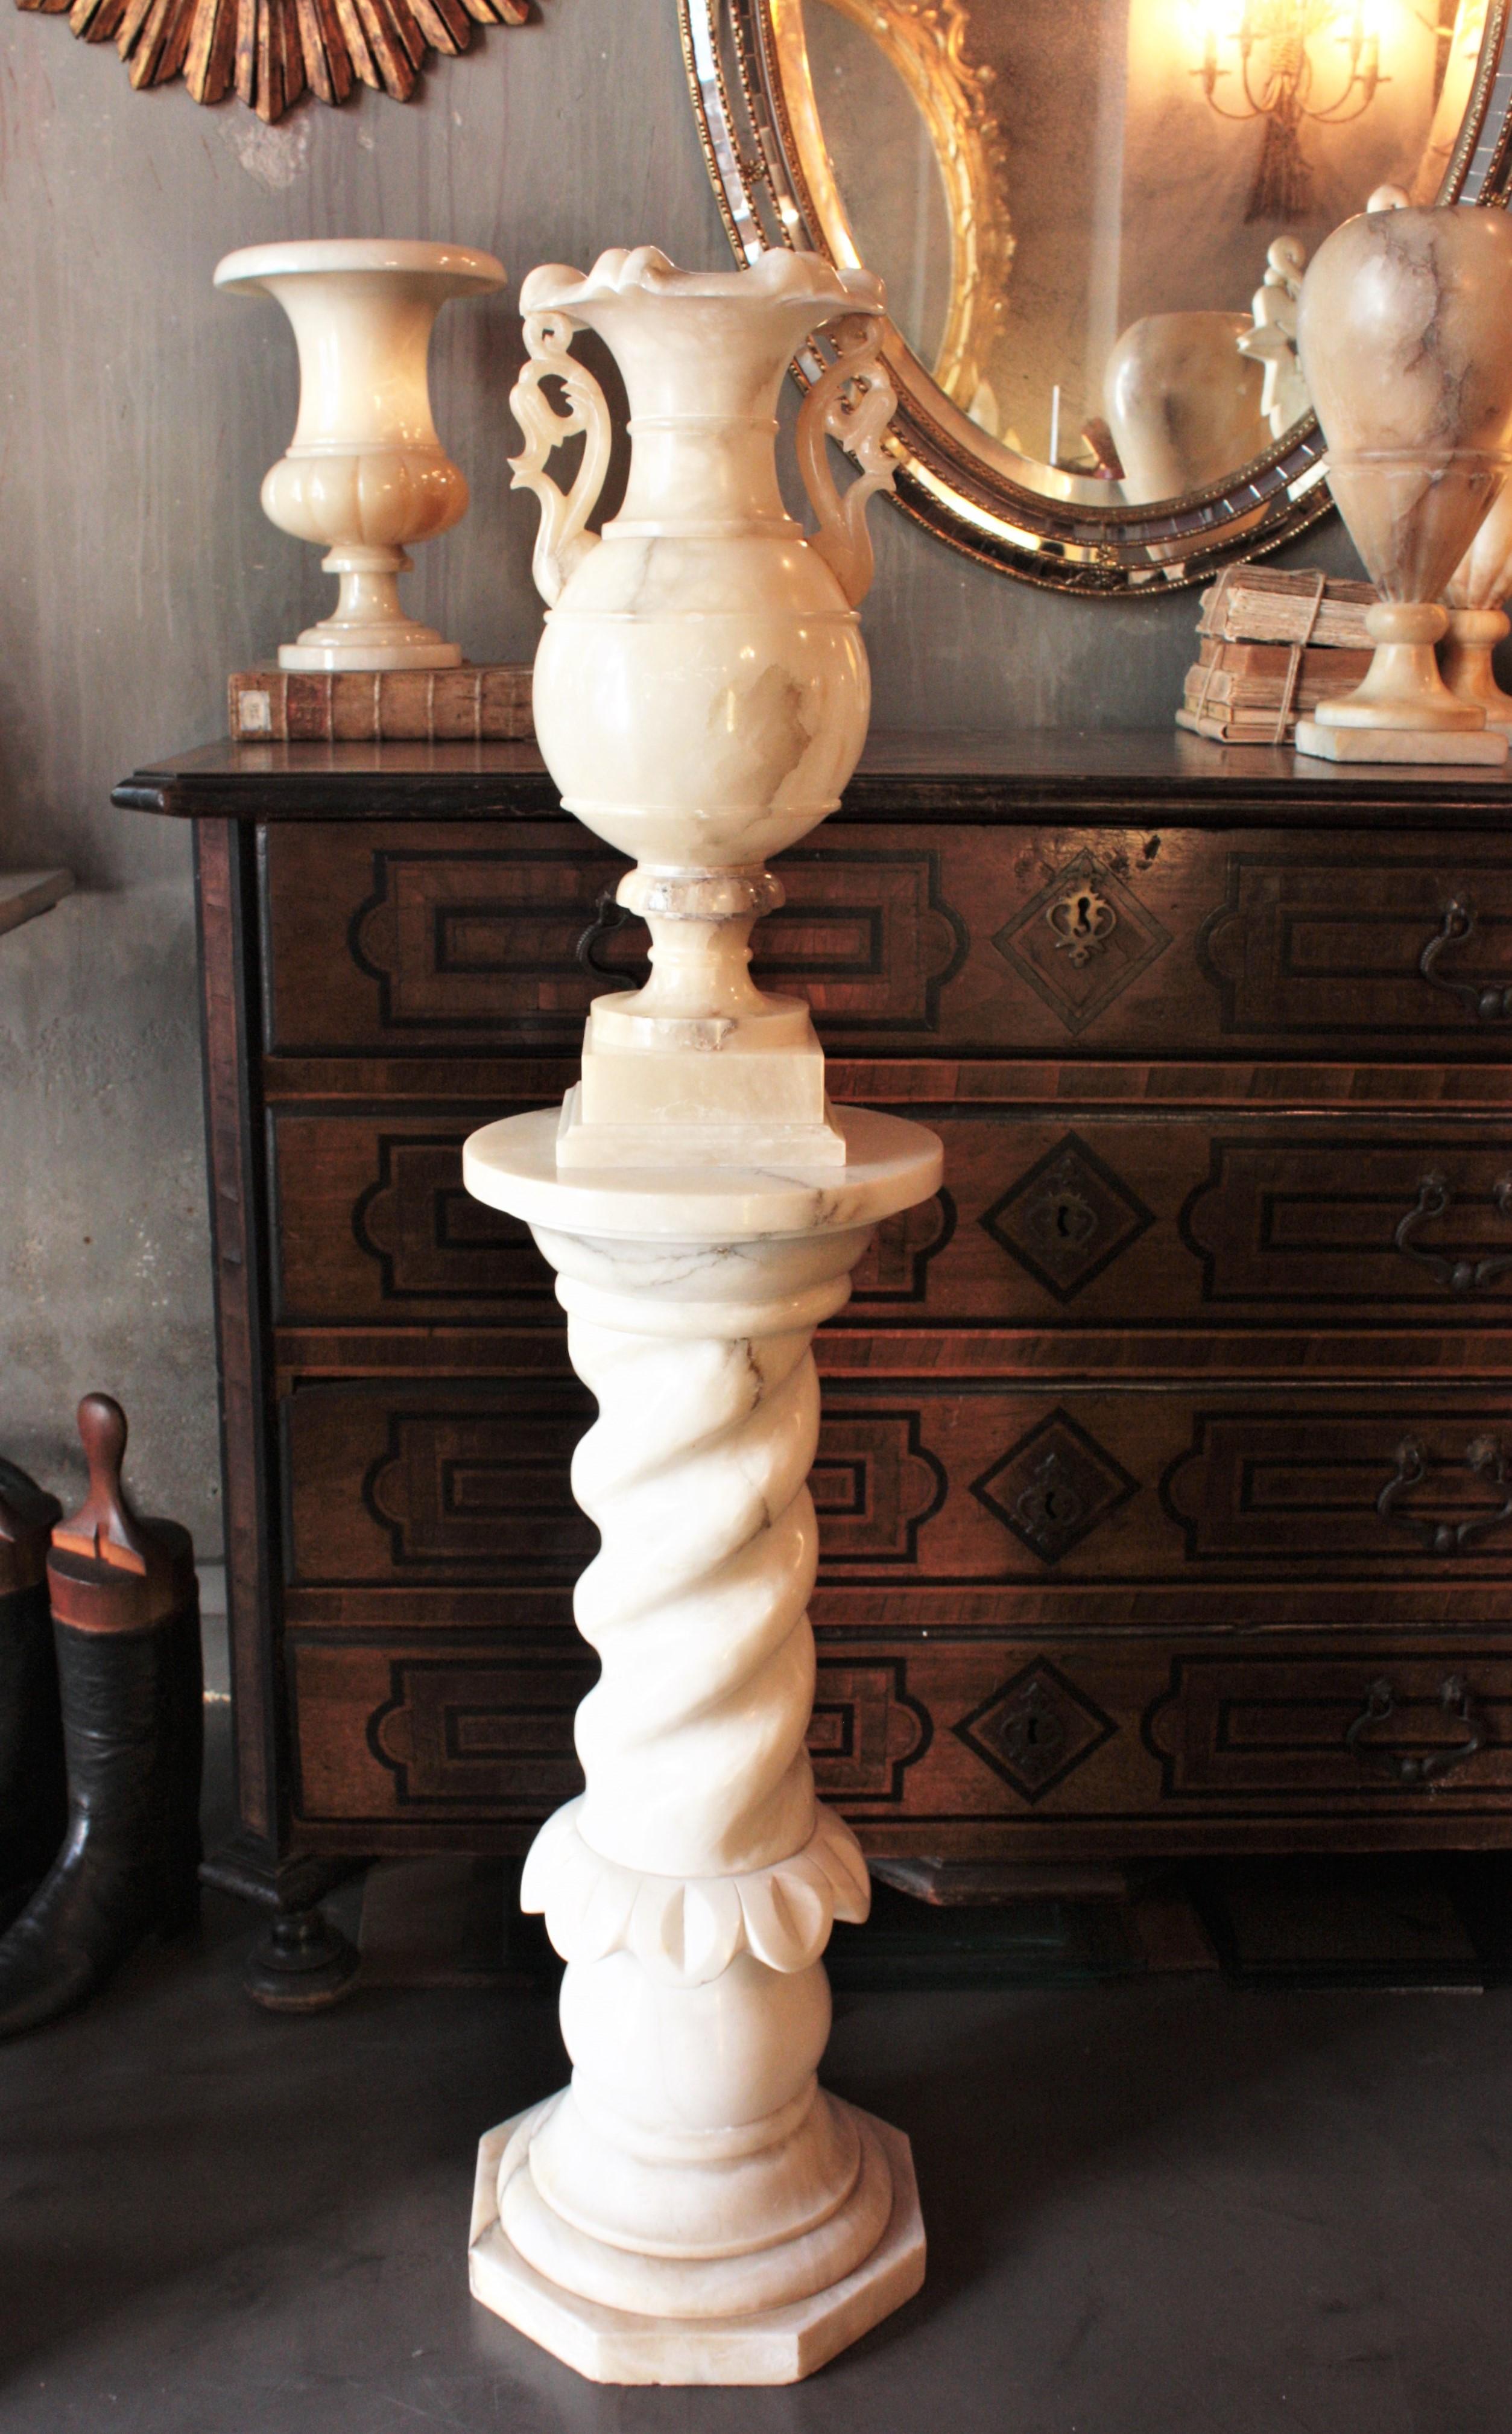 Lampadaire en albâtre sculpté.
Exceptionnelle lampe néoclassique en albâtre sculpté avec des poignées sur un socle en forme de colonne, Espagne, années 1930-1940
Ce lampadaire en albâtre présente un élégant design néoclassique. Le lampadaire Urn